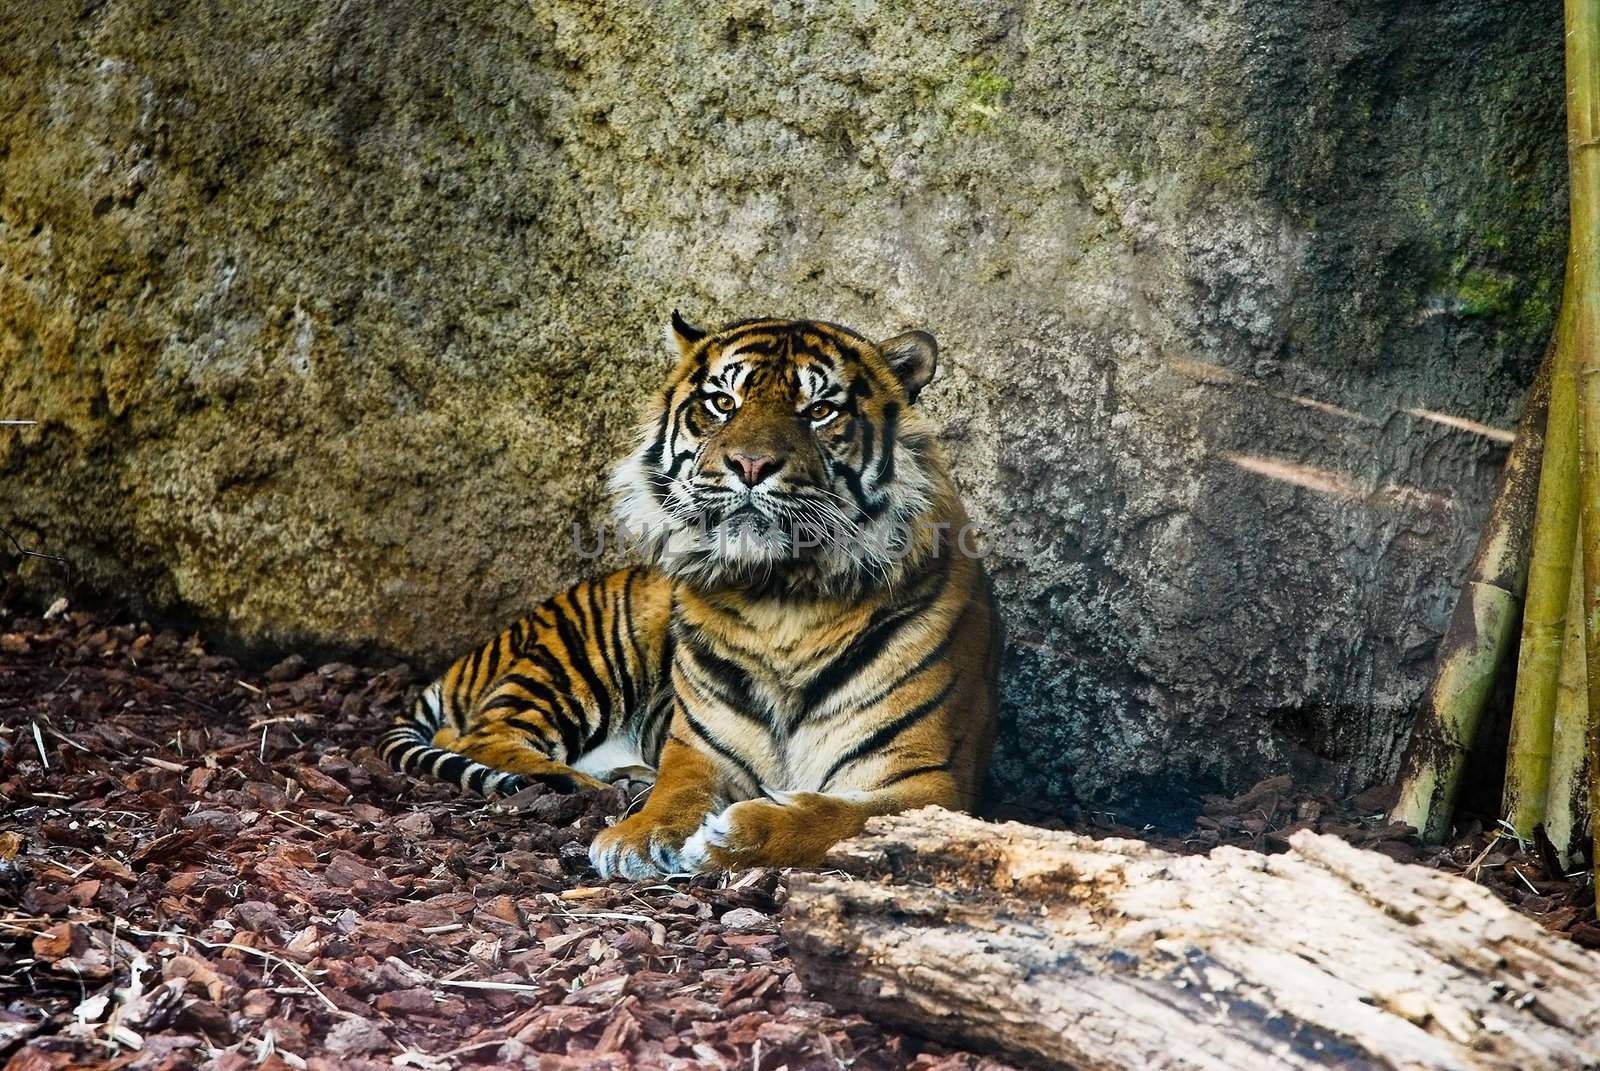 Sumatran Tiger( Panthera tigris sumatrae ) in zoo.